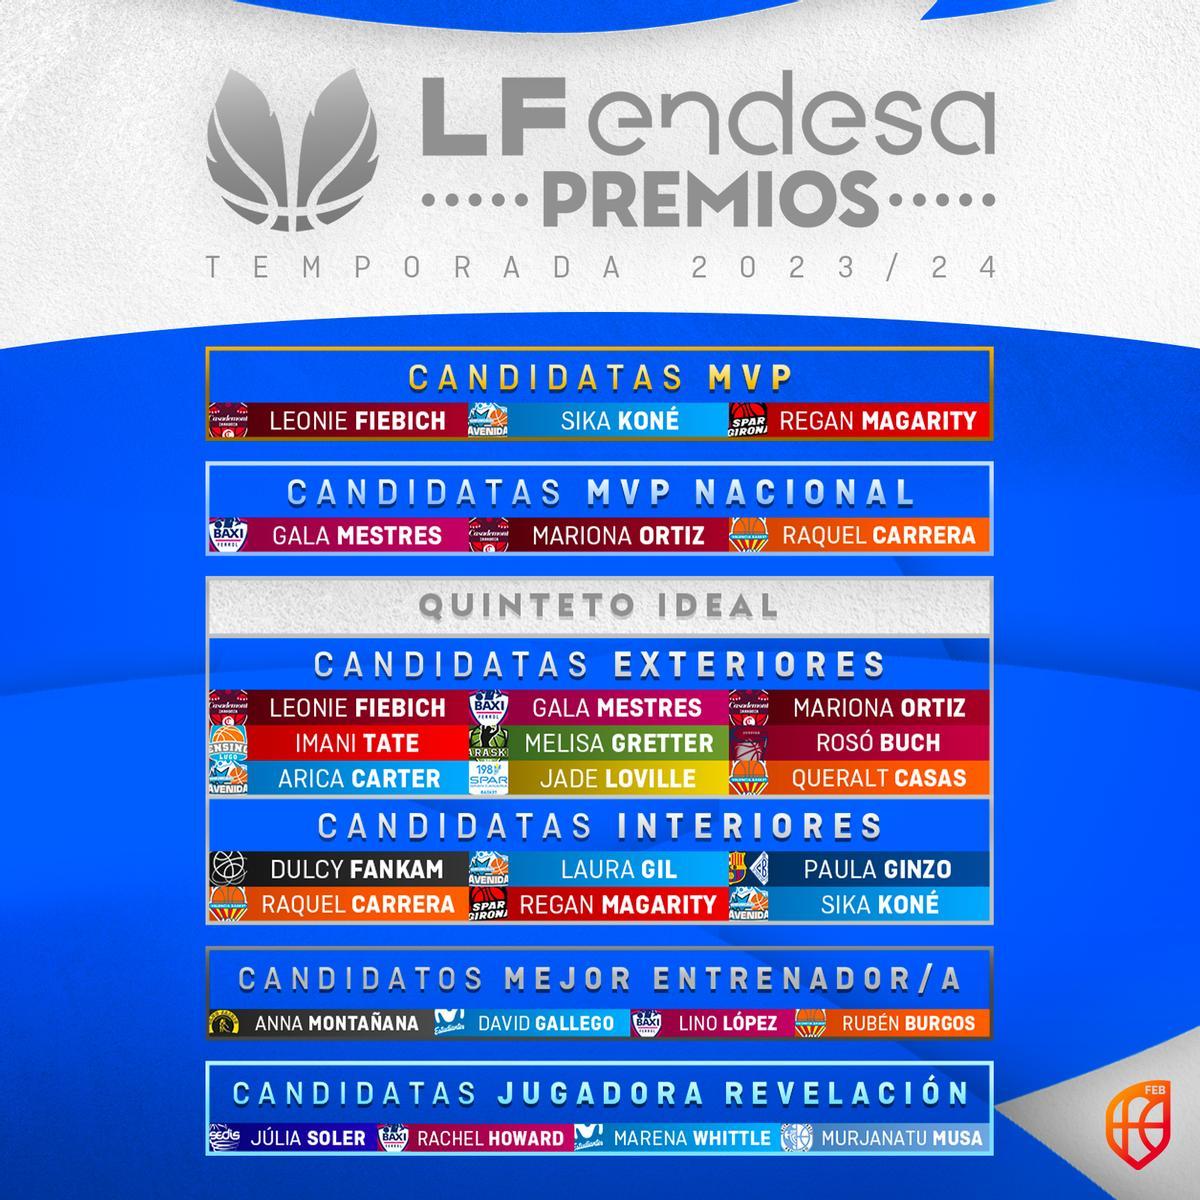 Listado de premios de la LF Endesa.